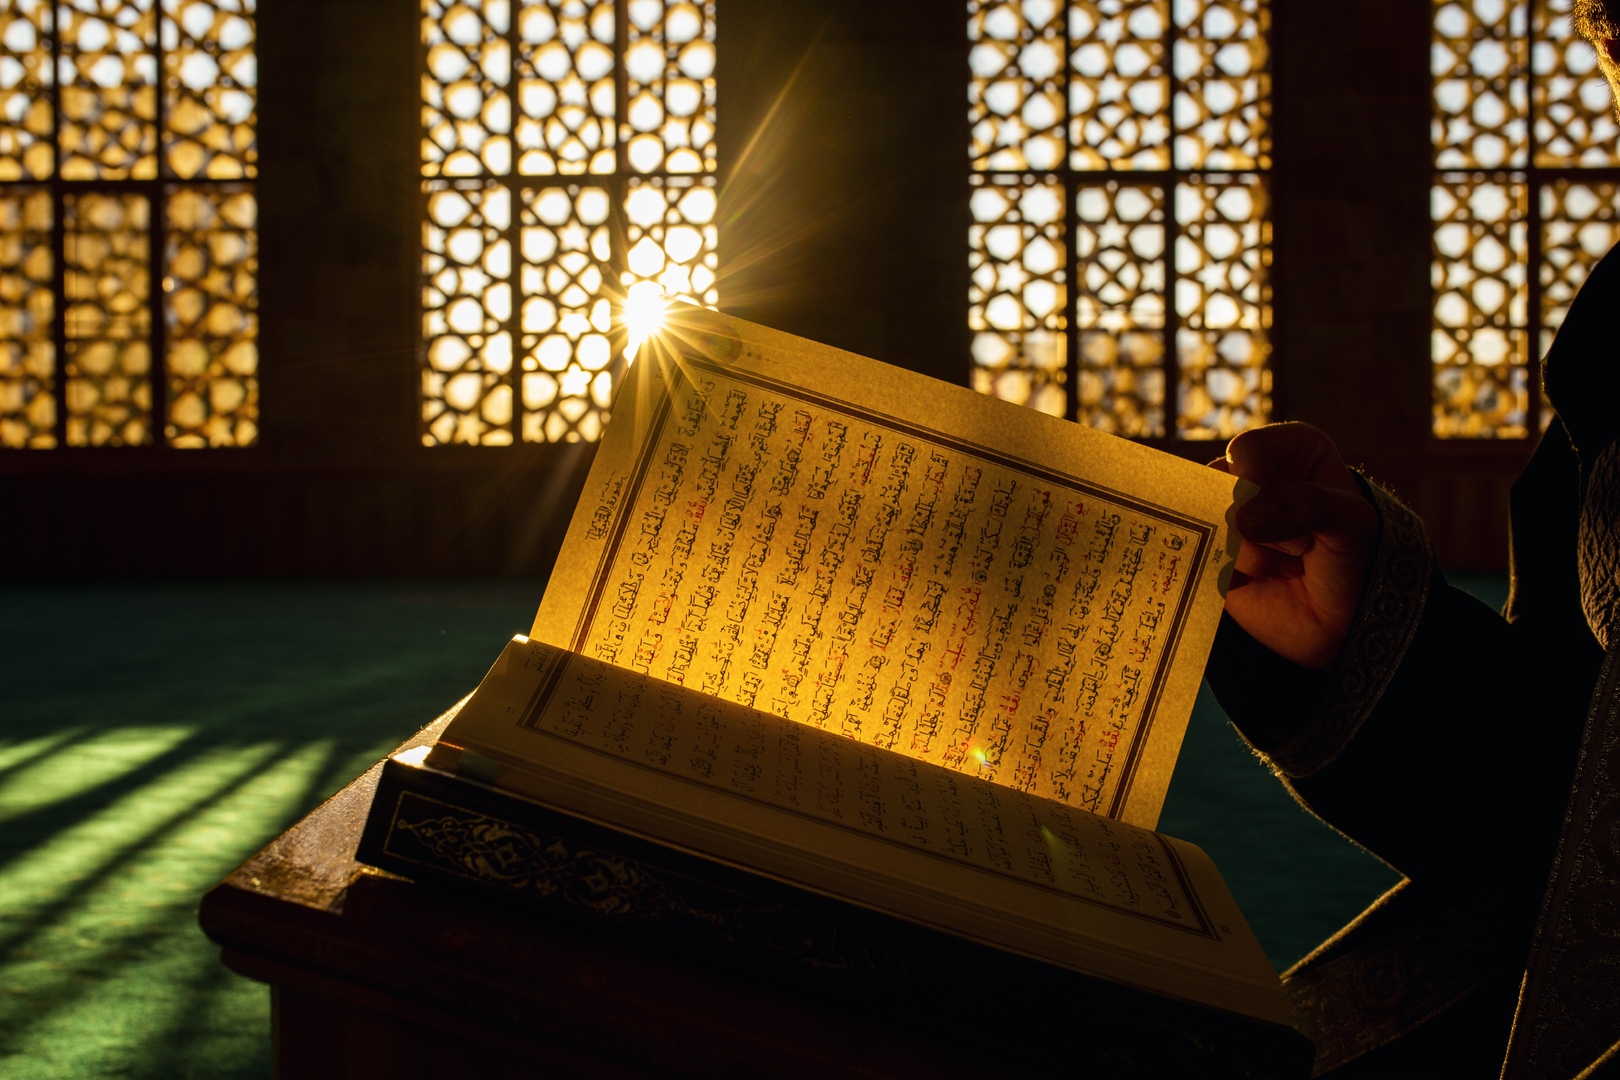 دولة خليجية تطبع 100 ألف نسخة مترجمة من القرآن لتوزيعها في السويد